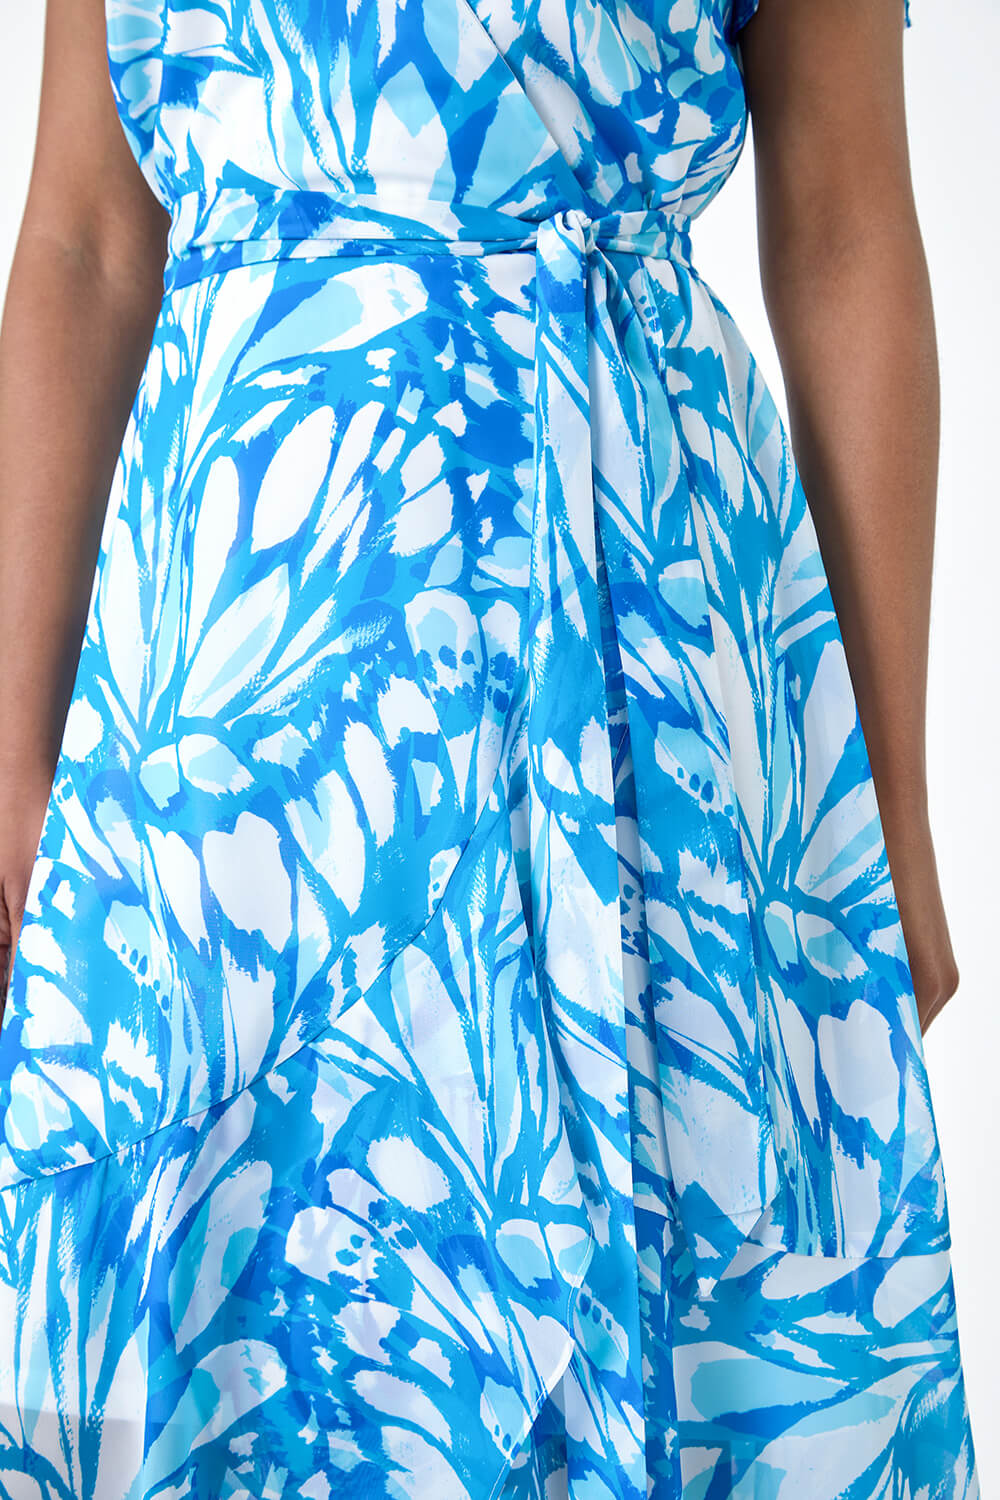 Blue Butterfly Print Chiffon Wrap Dress, Image 5 of 5